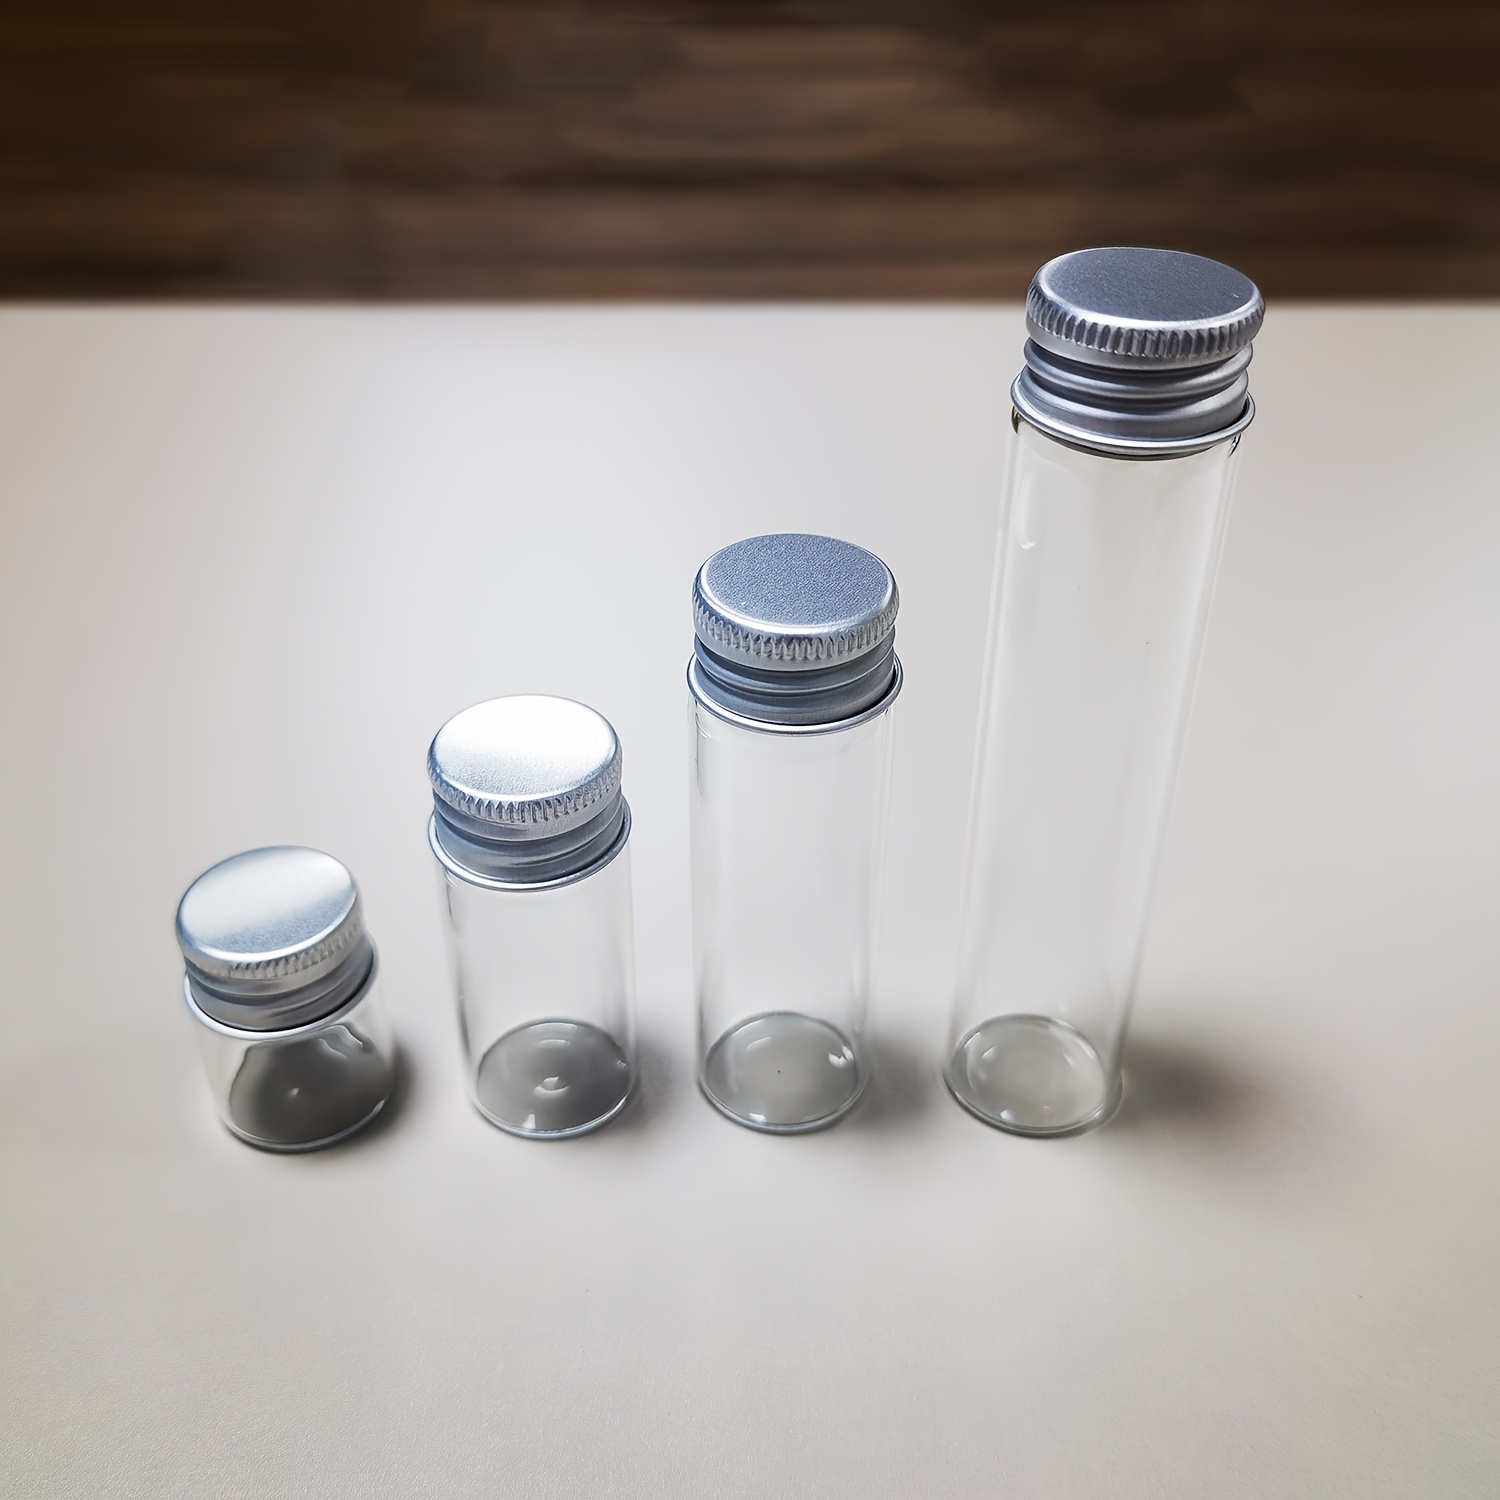 

10 Pcs 5ml/10ml/18ml/25ml Glass Bottles With Aluminium Lids Small Mini Glass Jars Travel Accessories